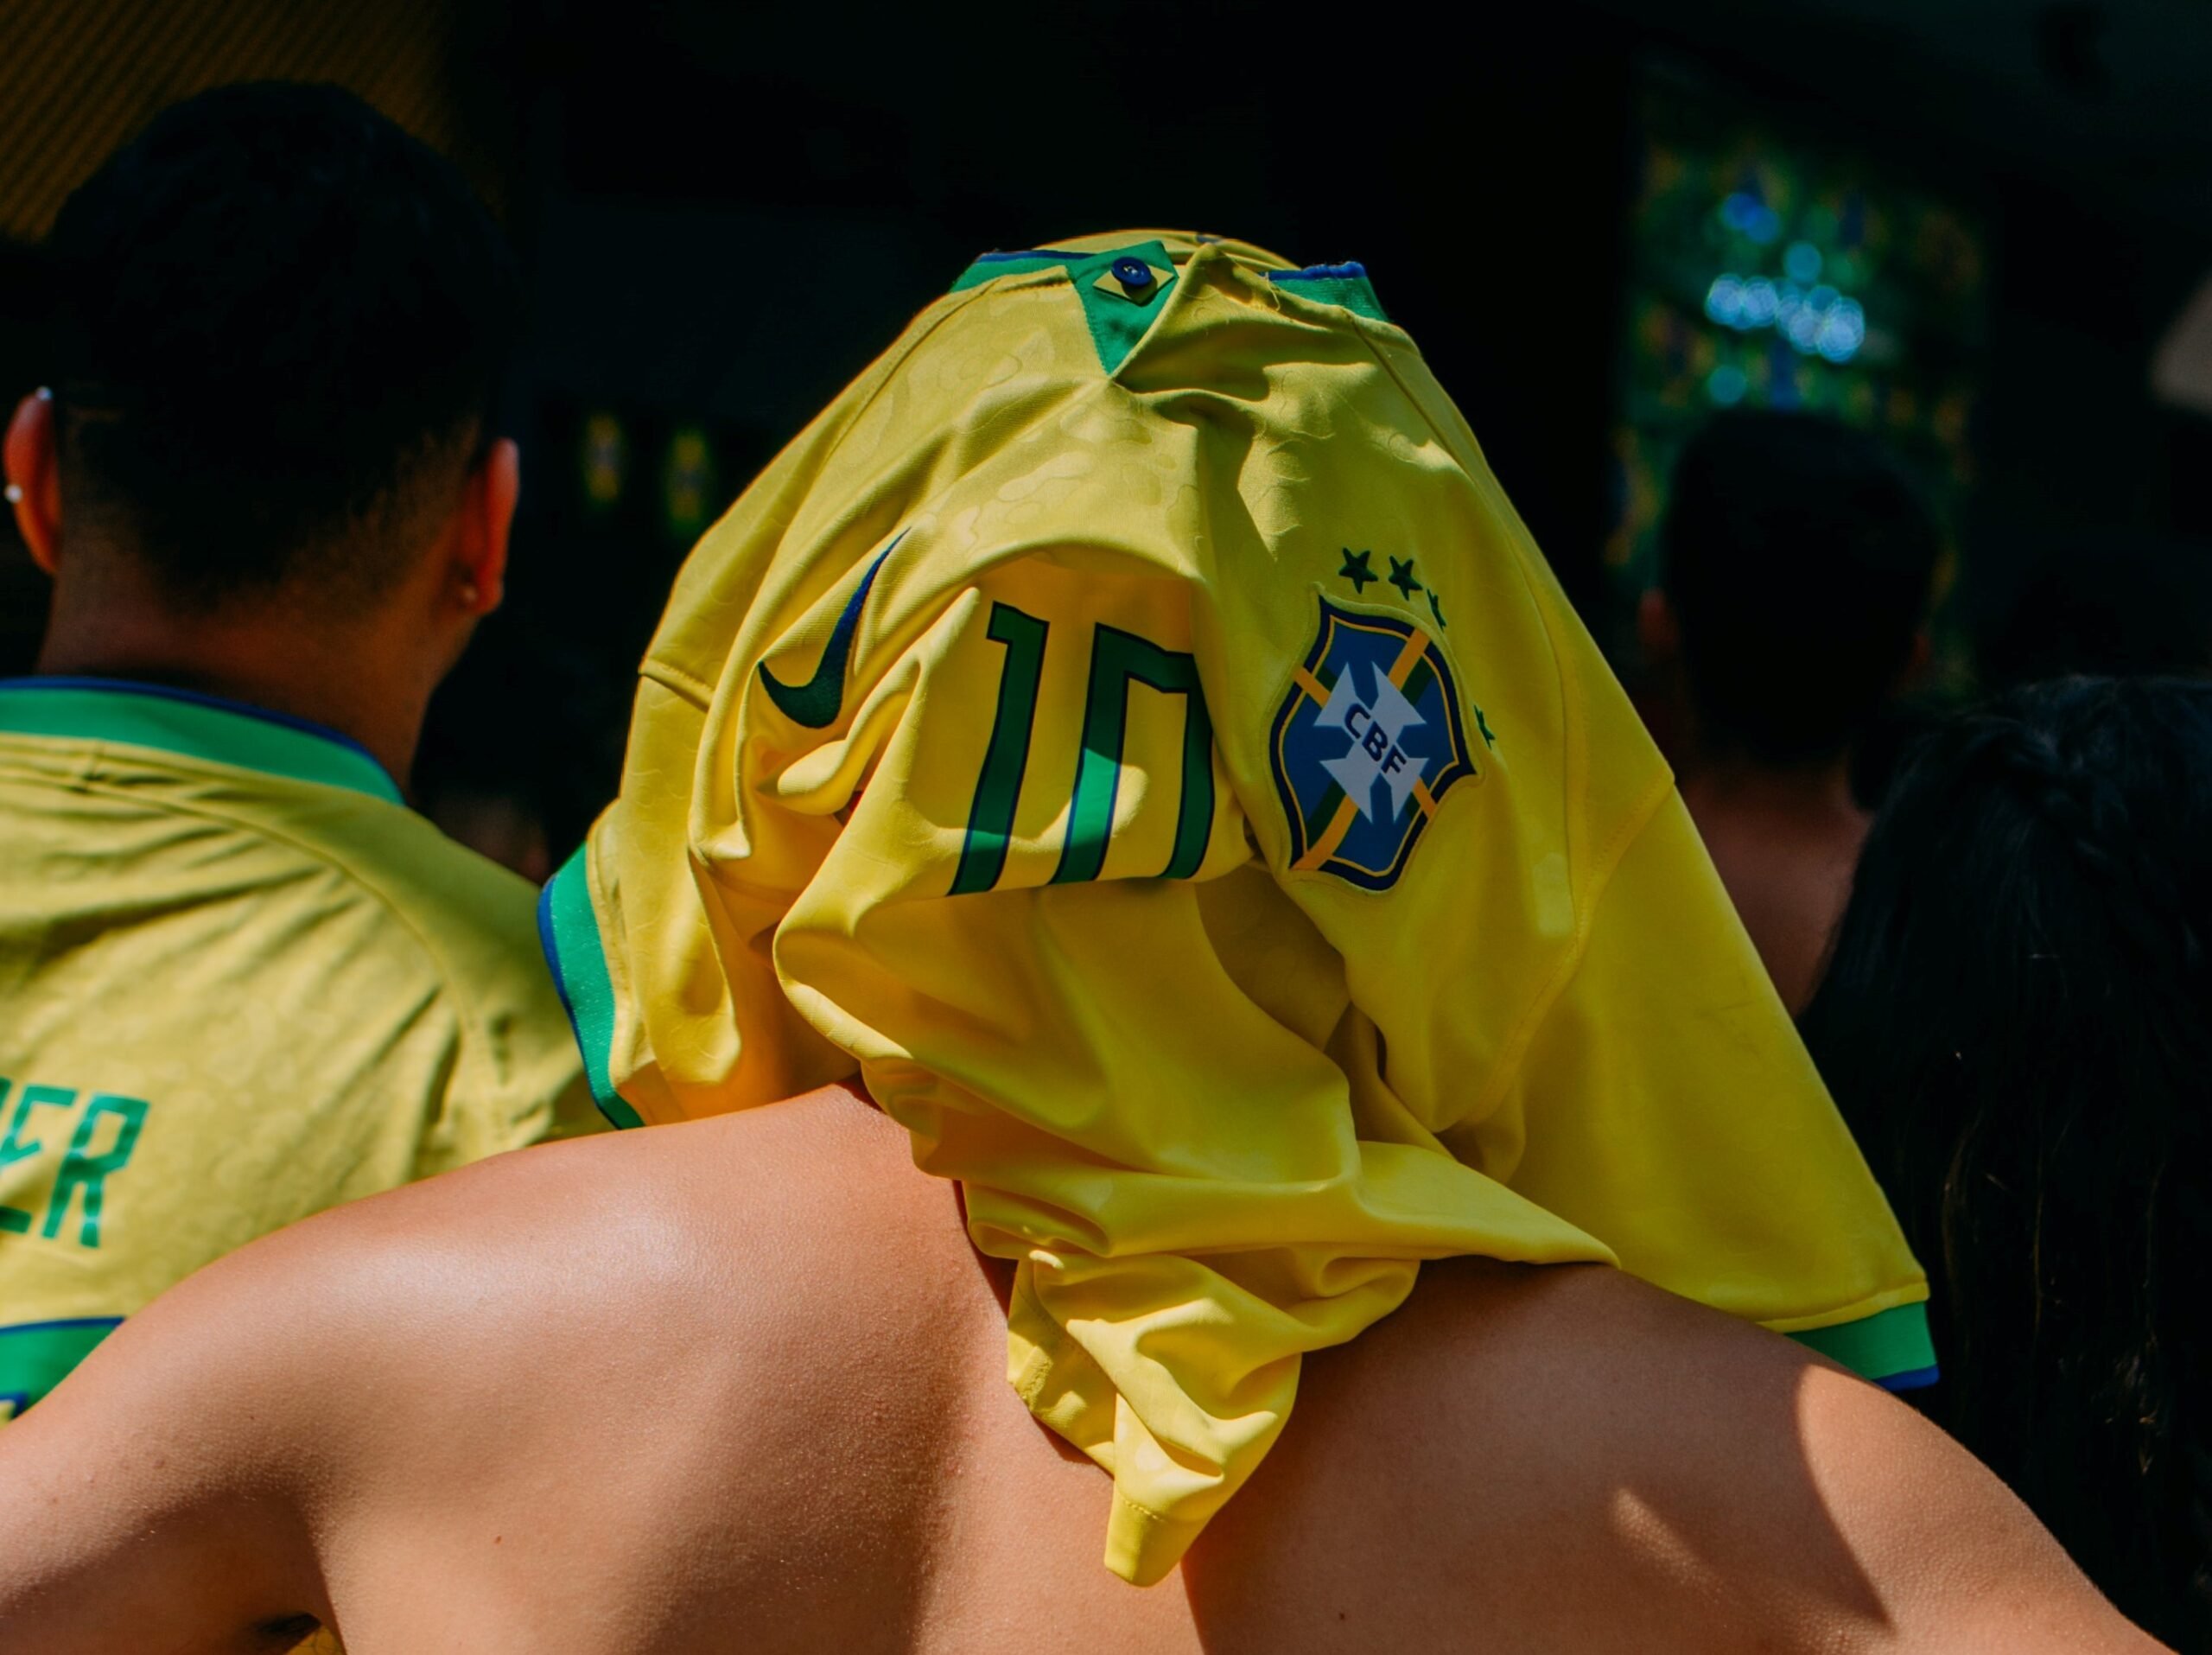 Você sabe quais são os brasileiros mais valiosos no mundo do futebol? Confira o Top 5 dos jogadores e veja se algum nome te surpreende.